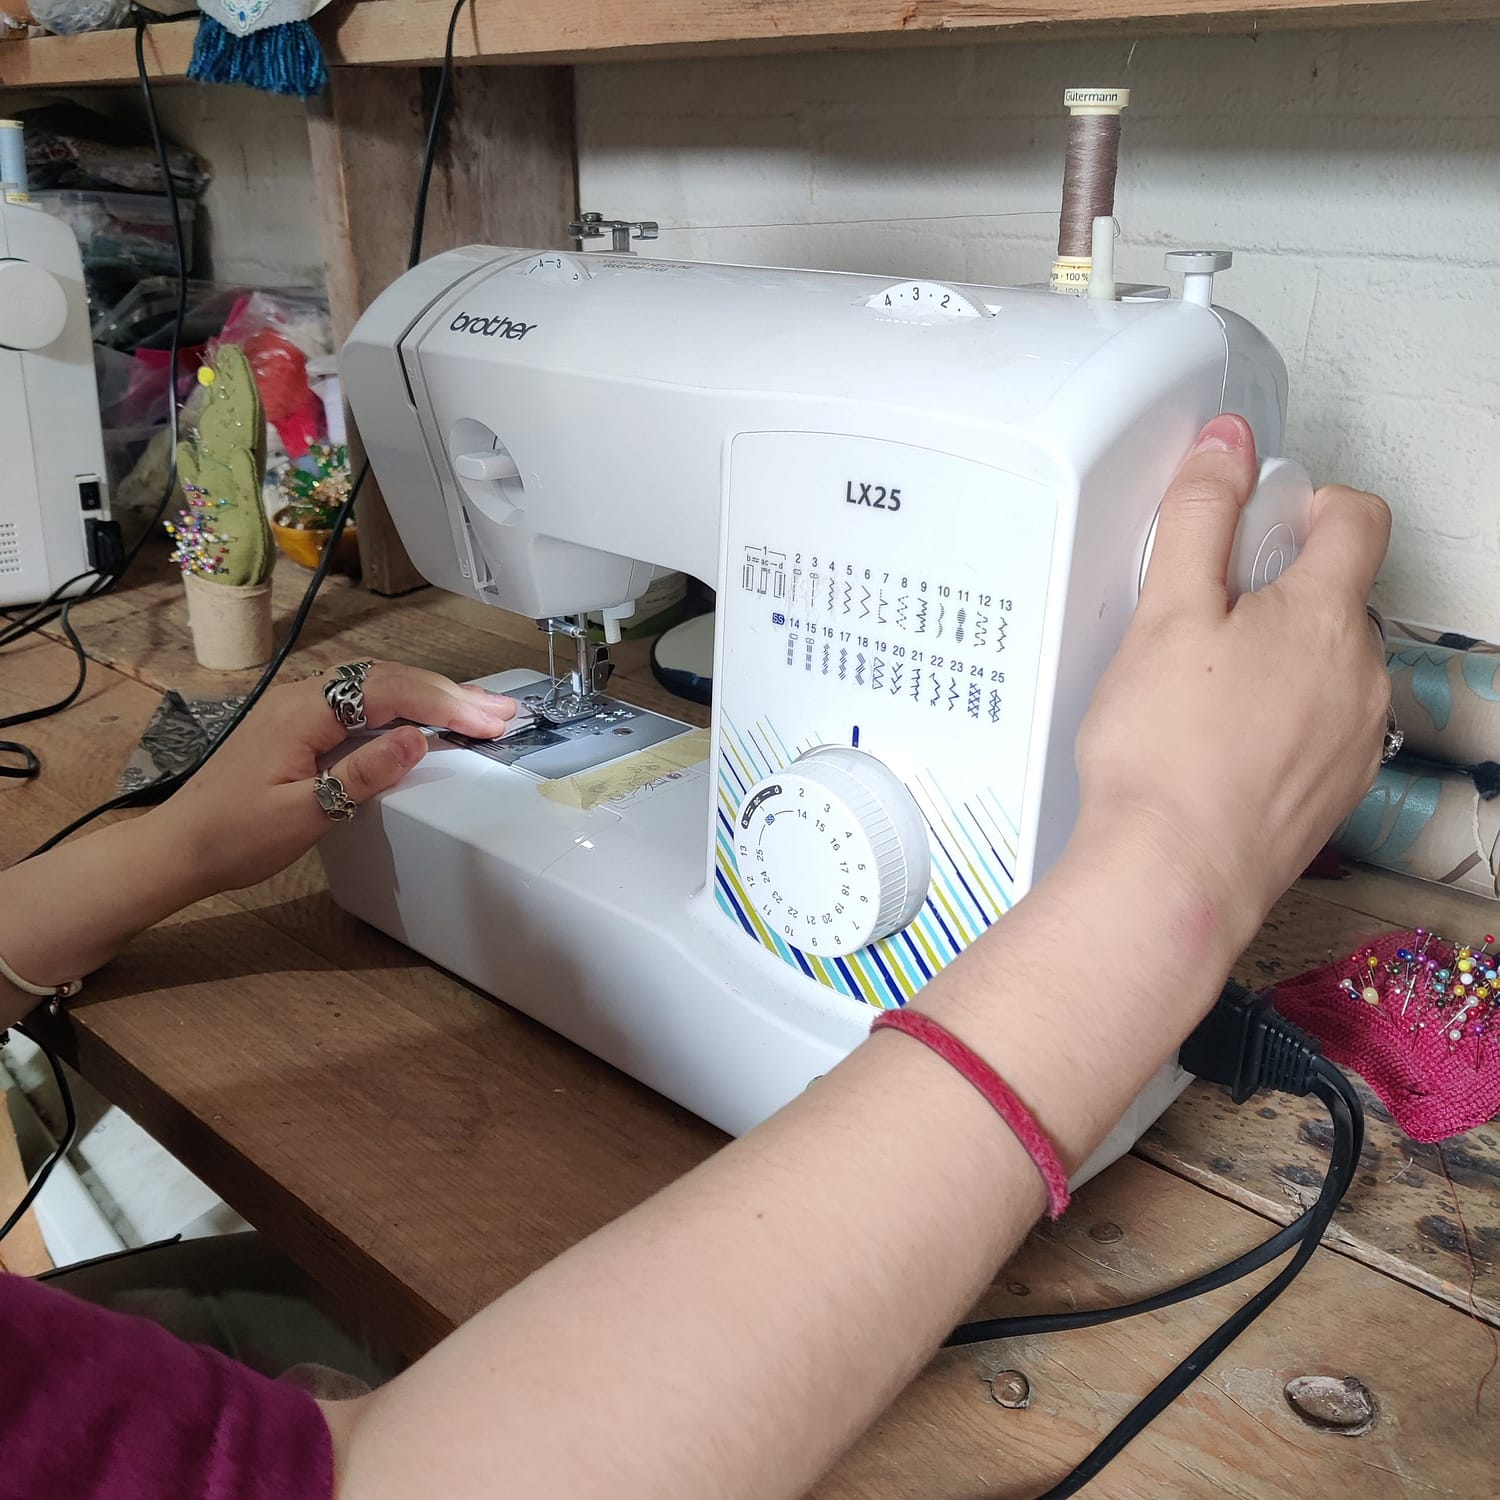 Volunteers is keeping hands on a sewing machine. Preparing to sew.